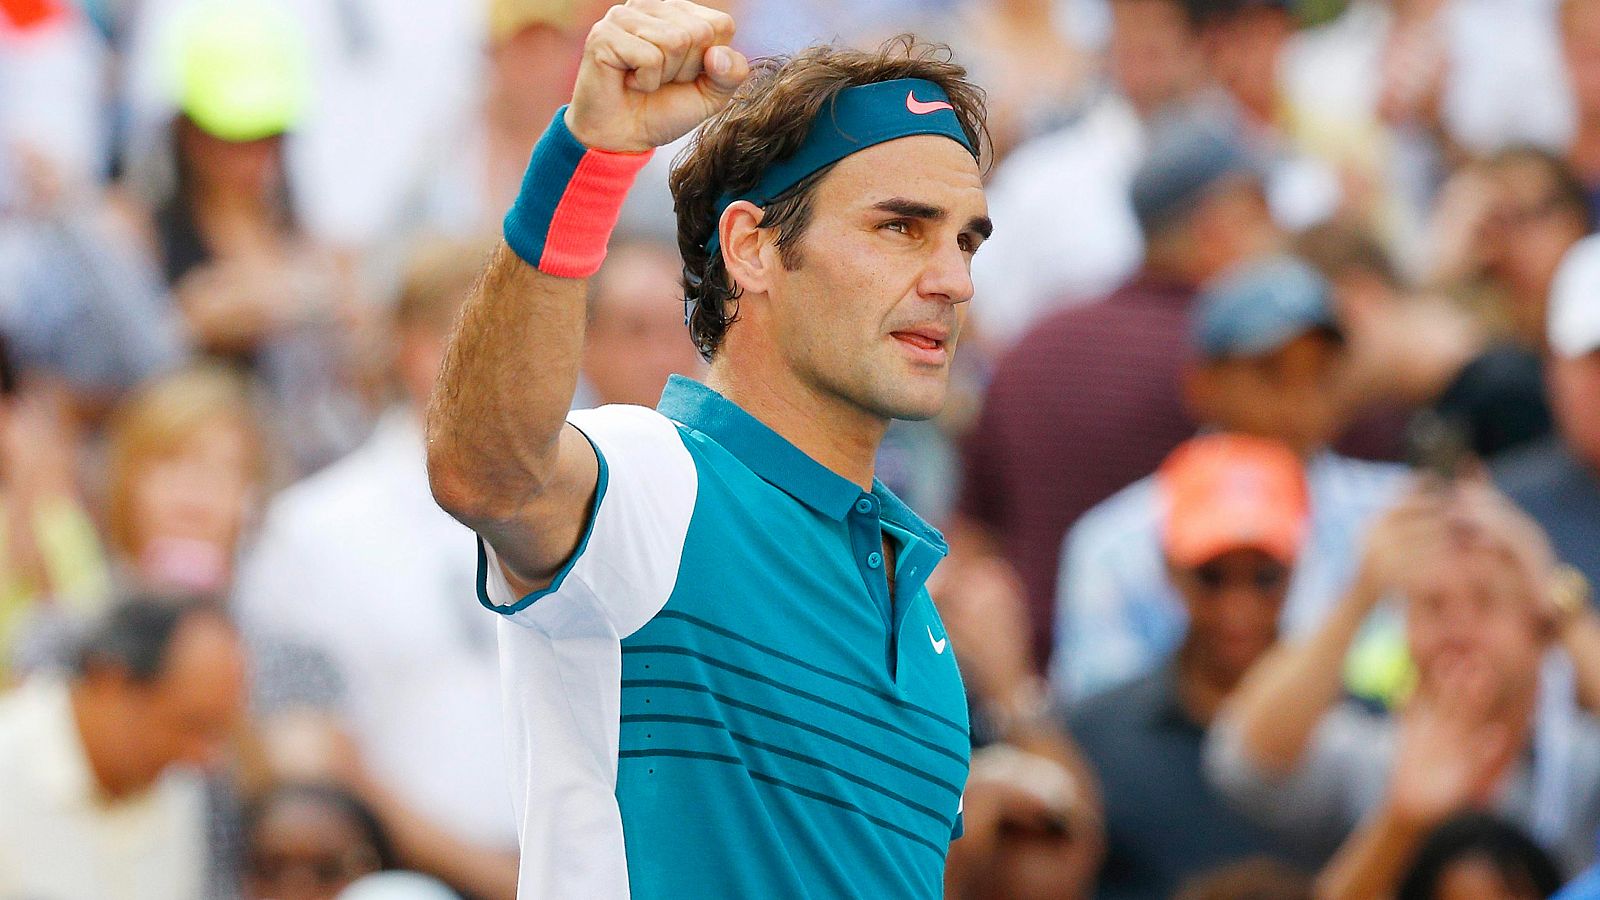 El tenista suizo Roger Federer saluda al público tras vencer a Kohlschreiber